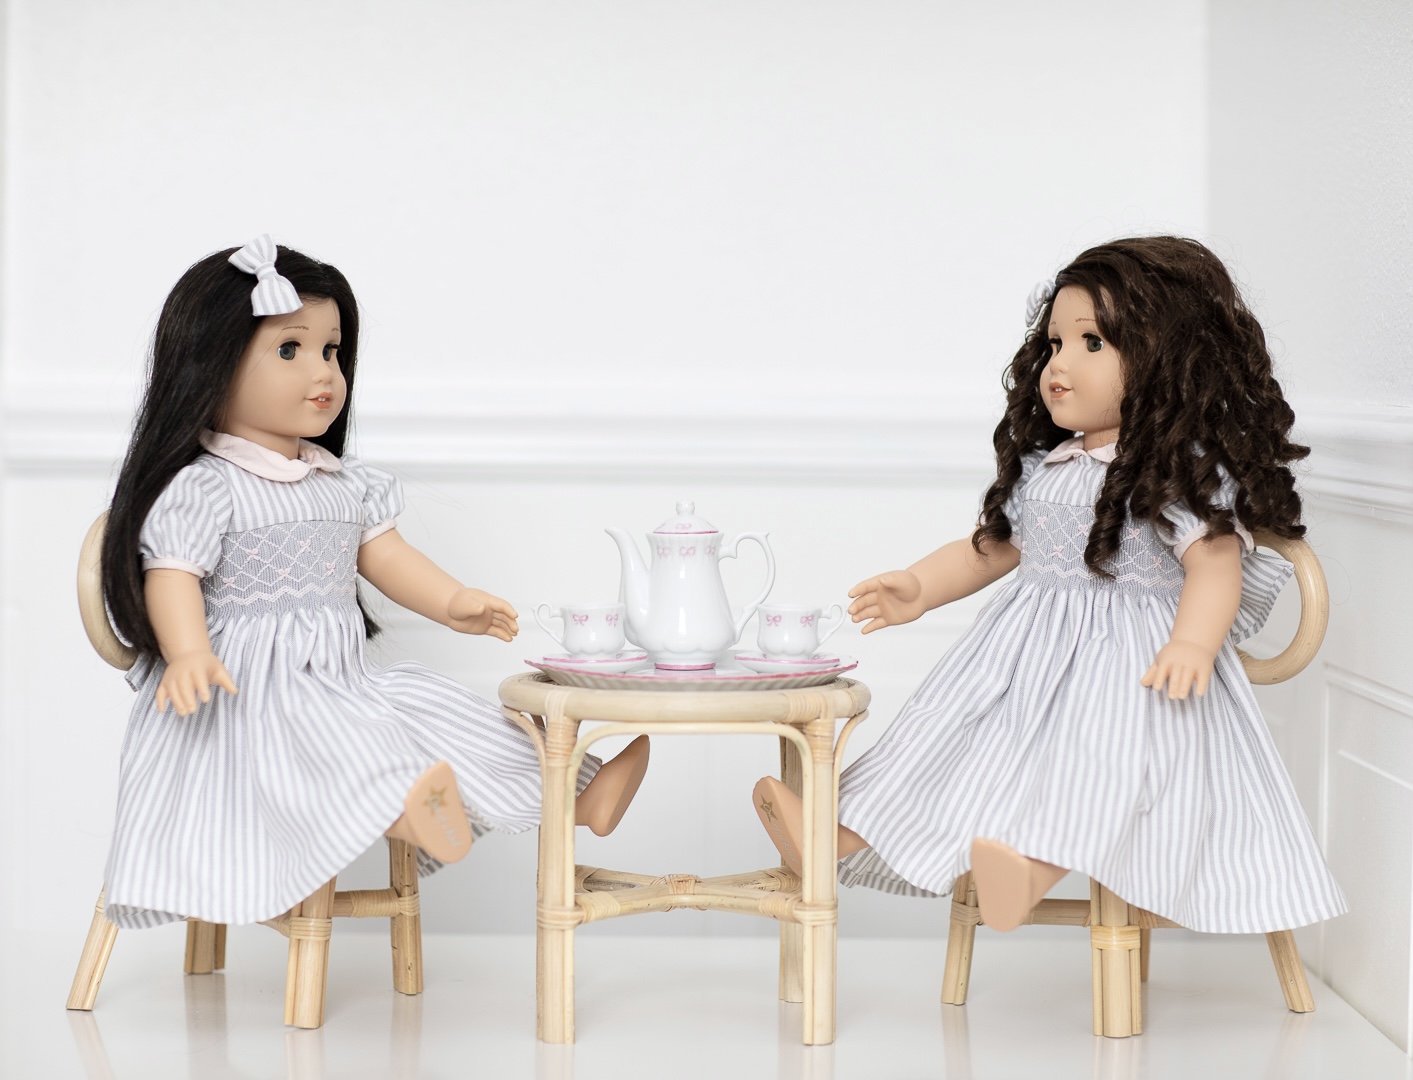  Miniature tea set for dolls  Handmade porcelain  Paris boutique for kids 